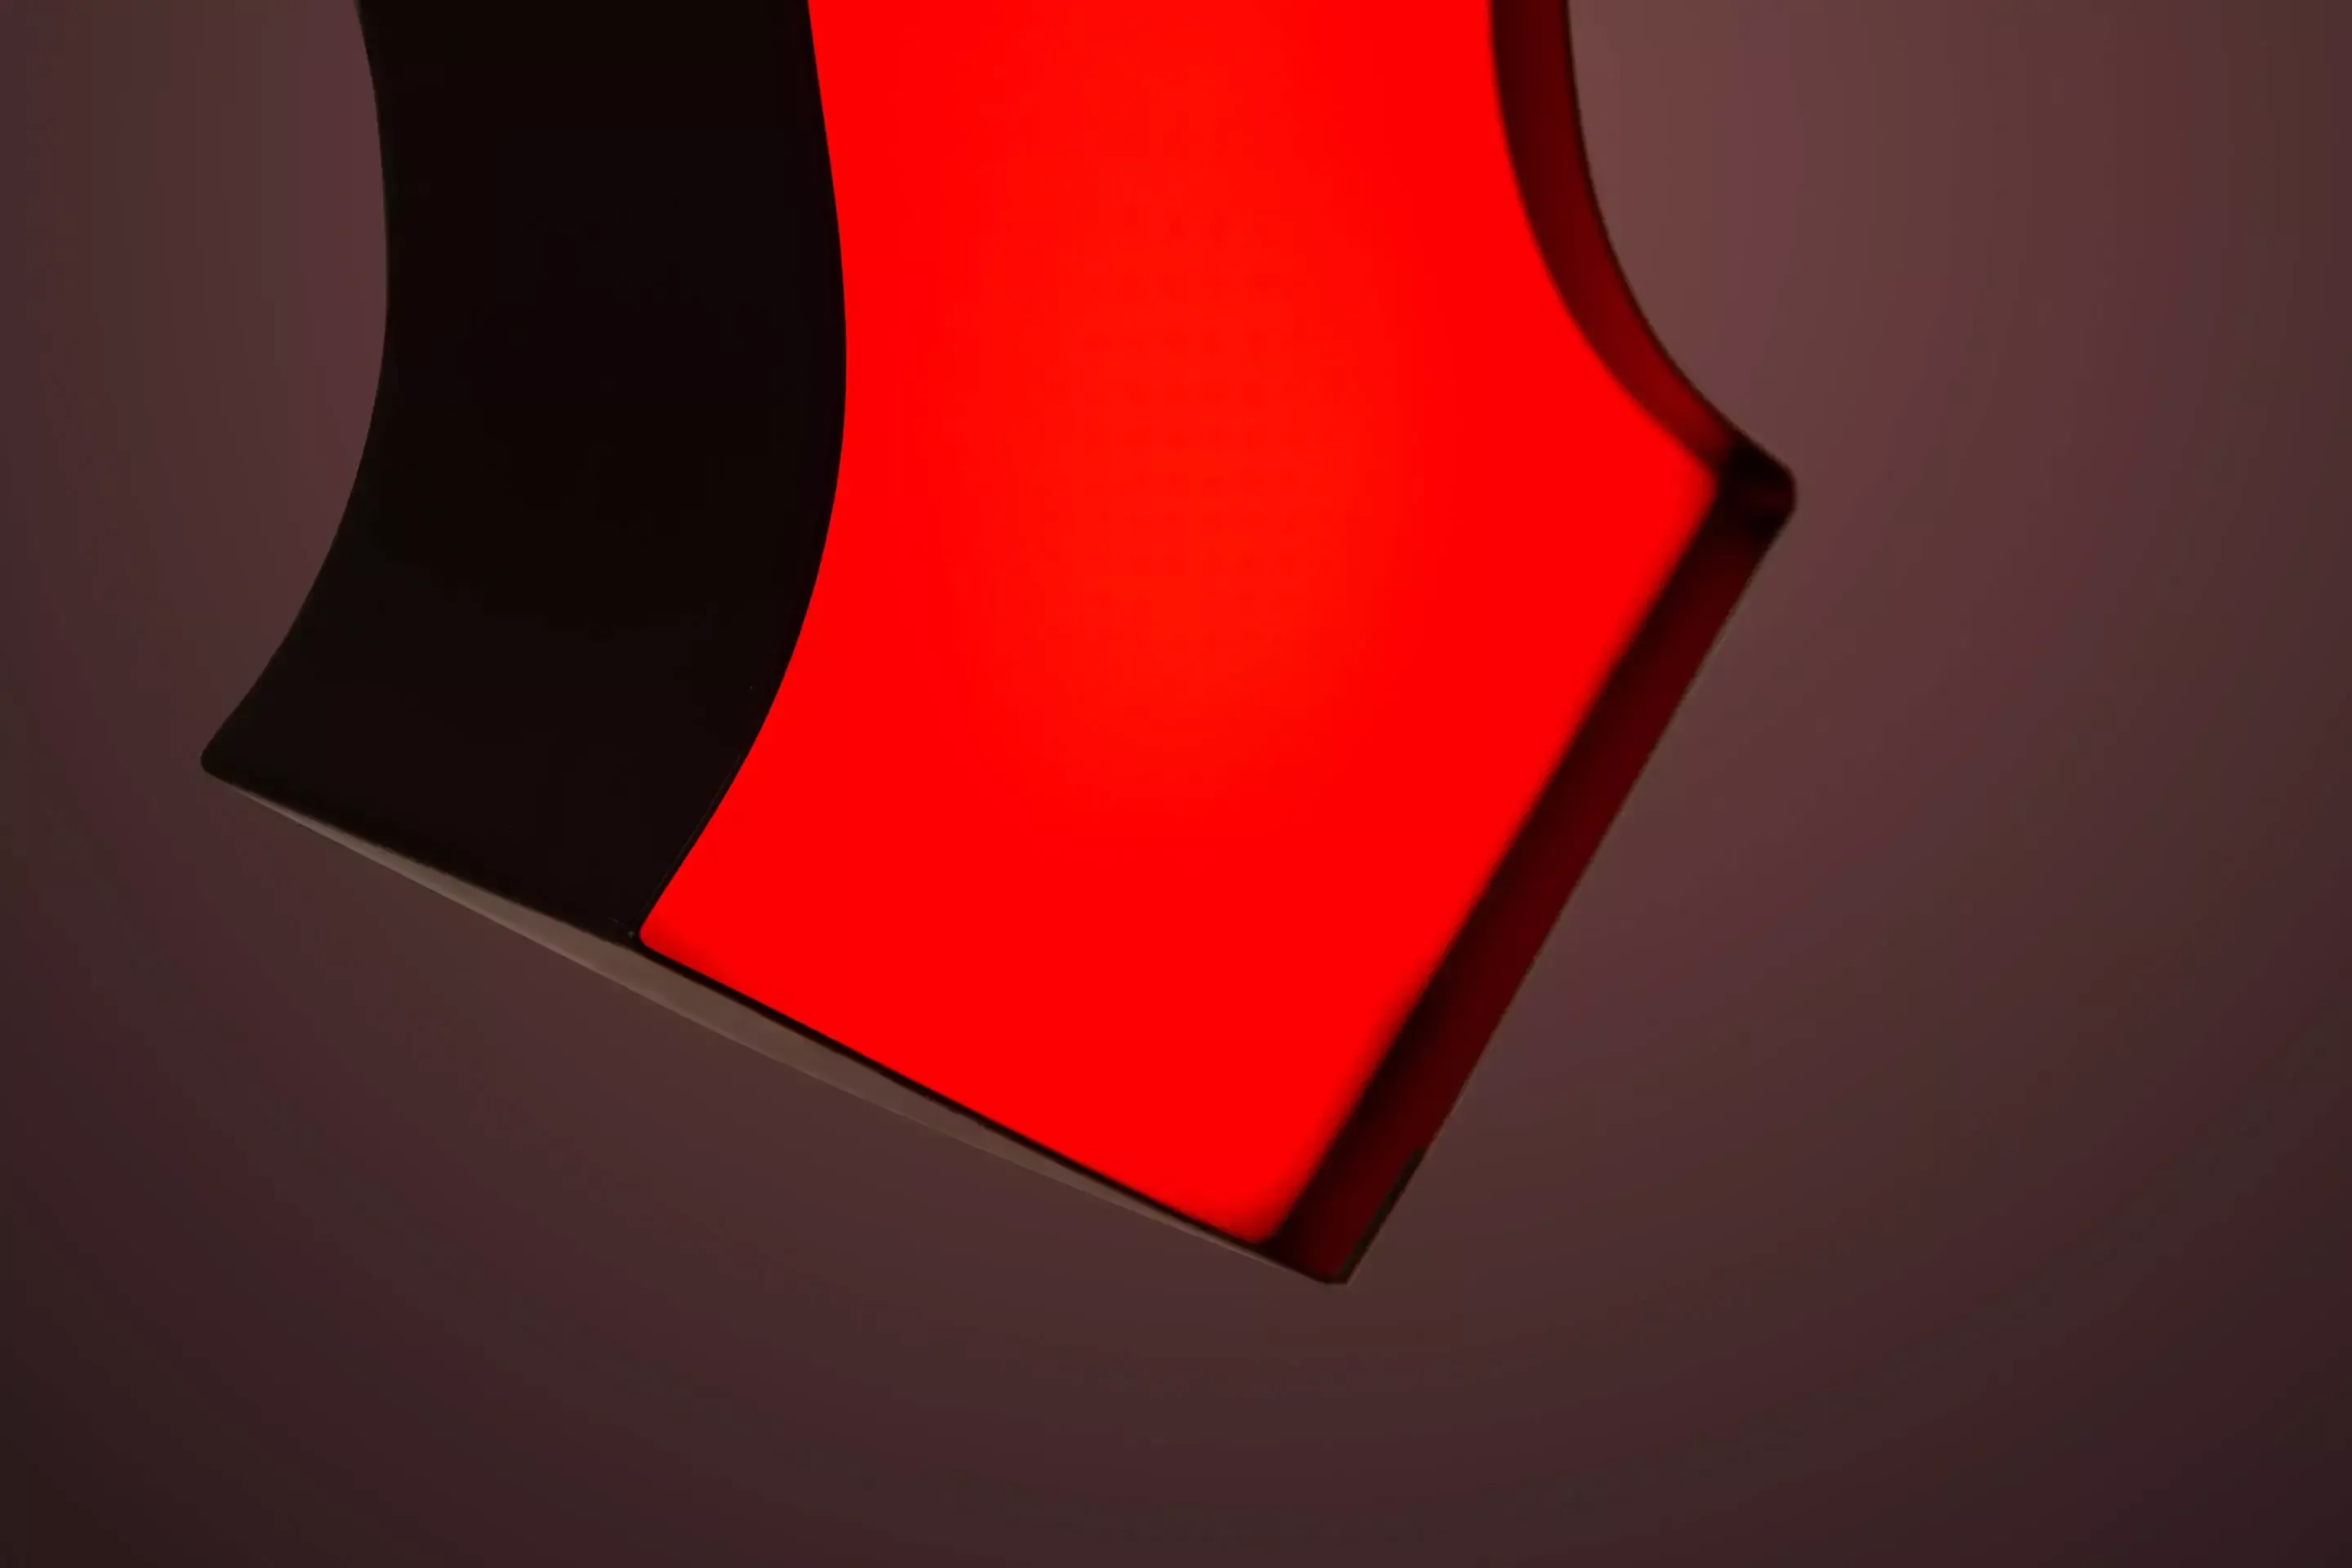 Letter M - custom LED illuminated letter in red, detail